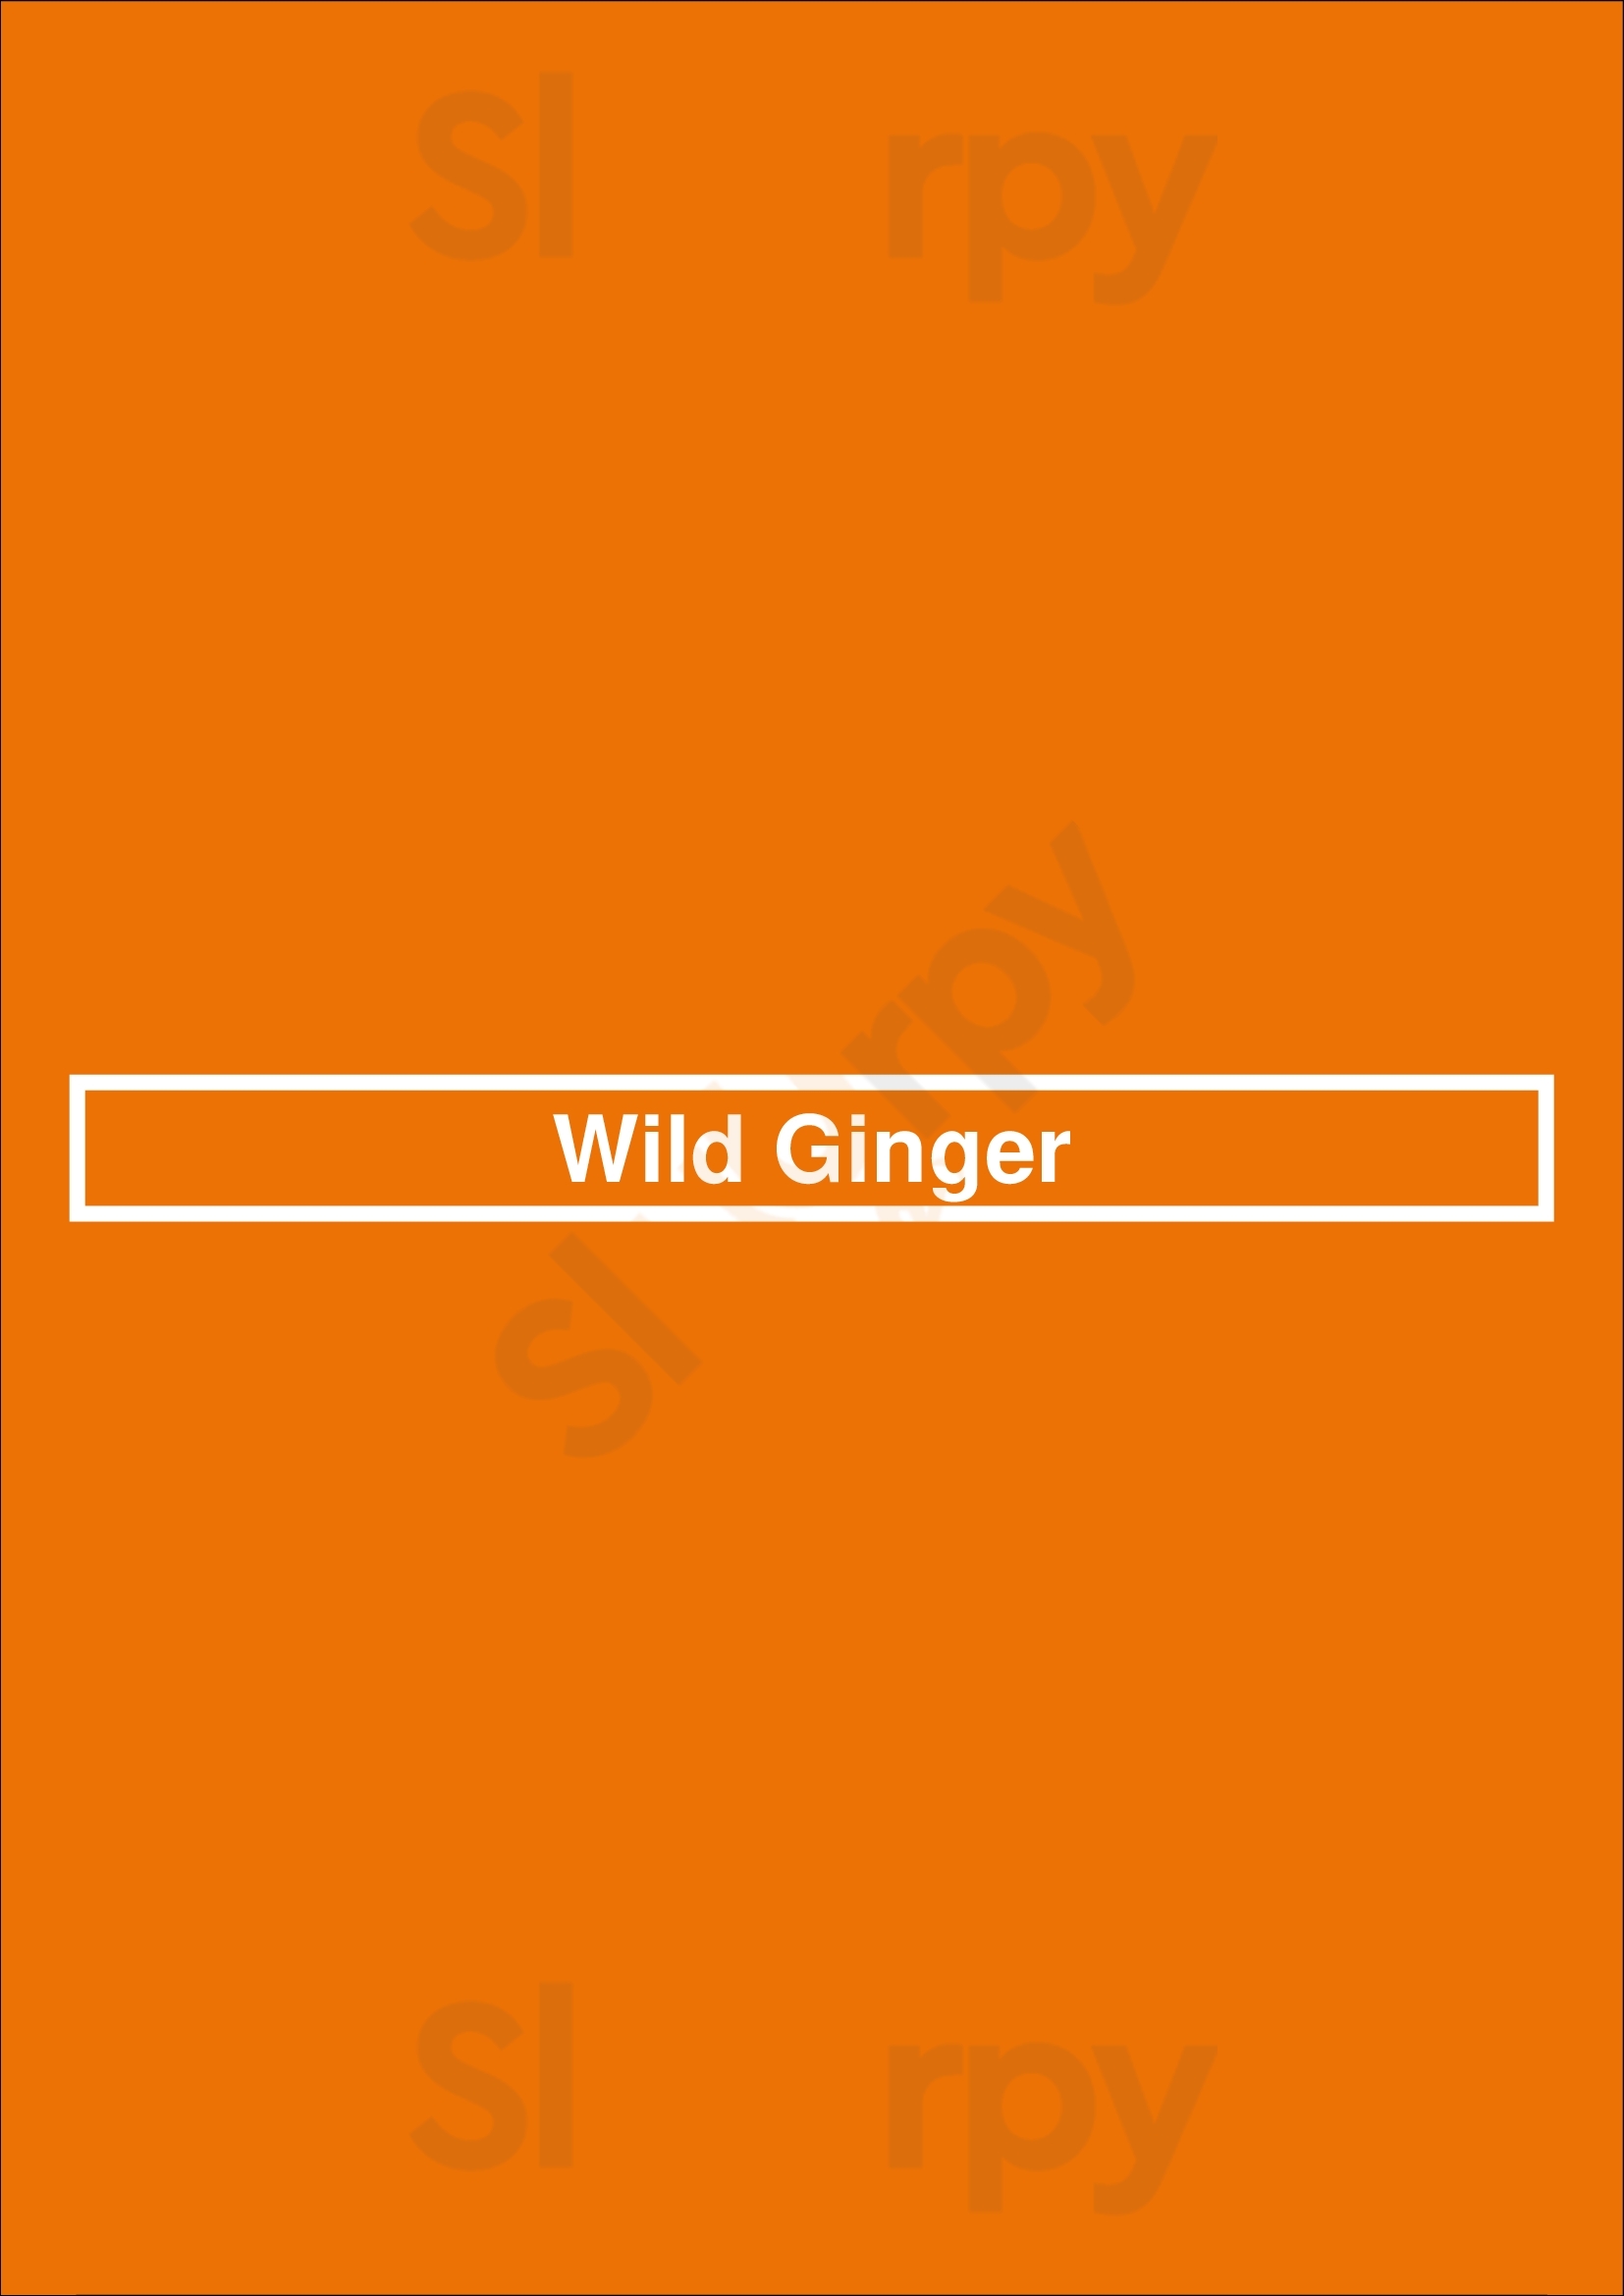 Wild Ginger Atlanta Menu - 1